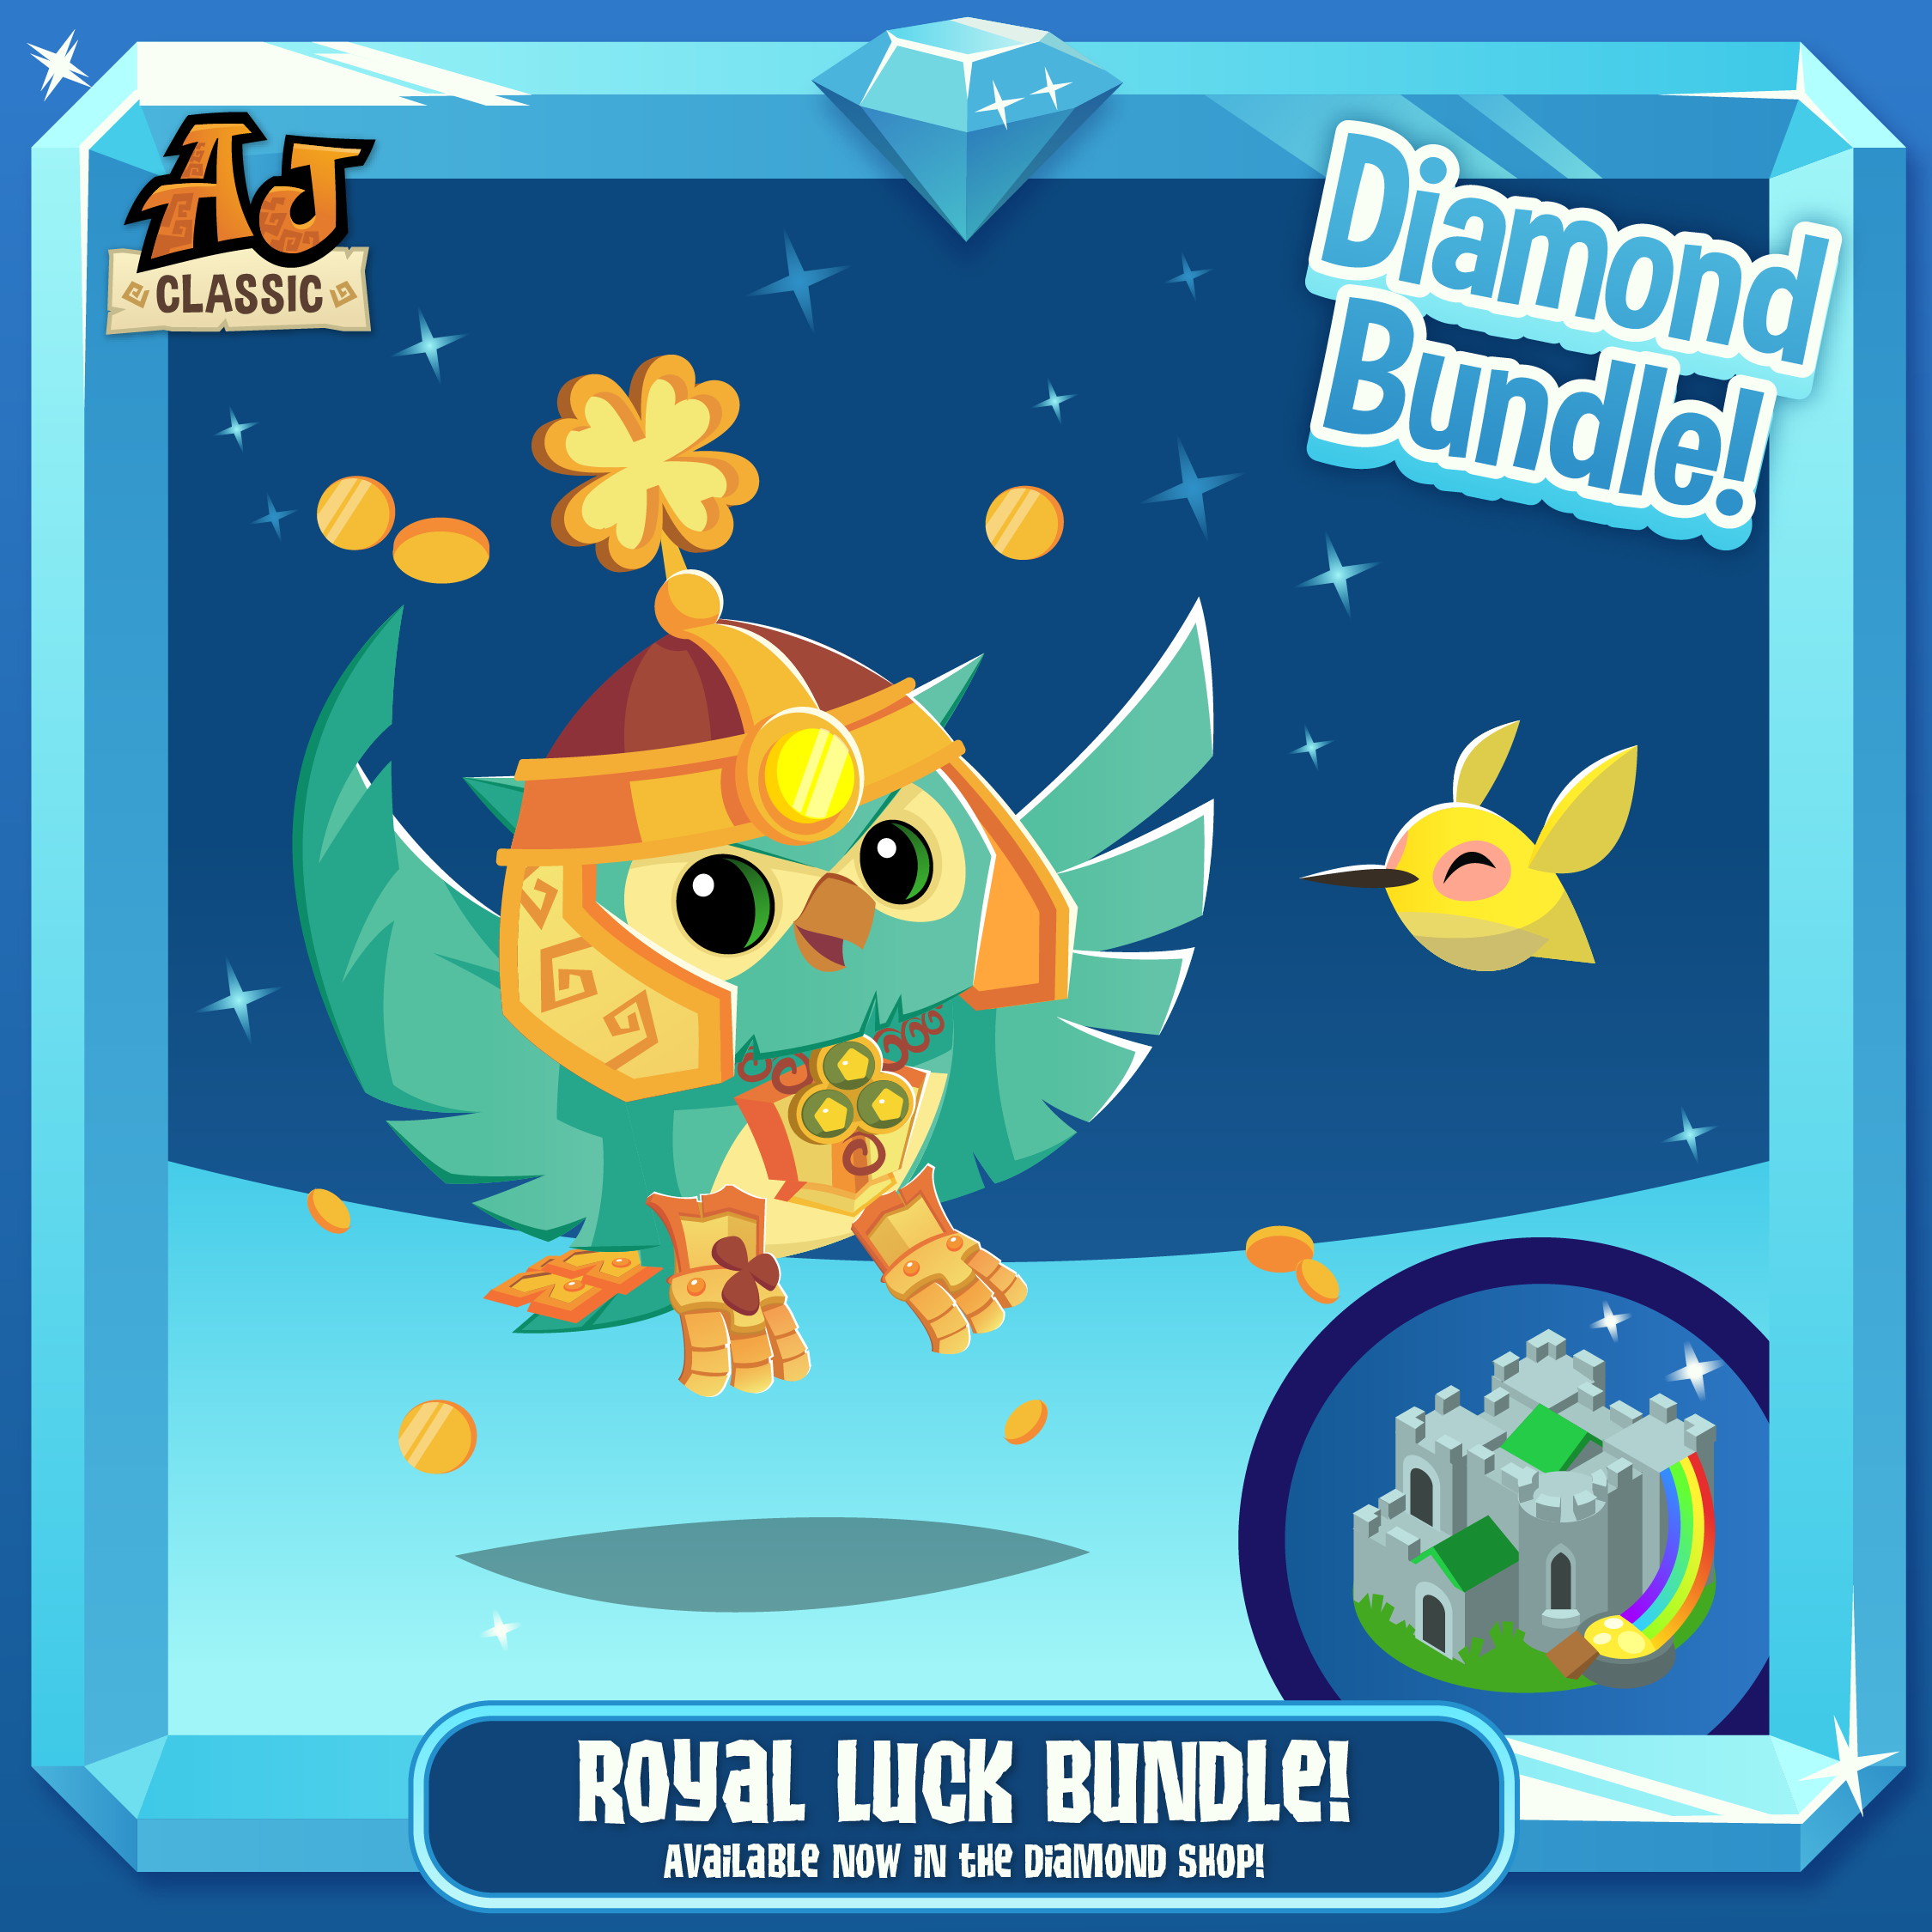 20220223 Royal Luck Bundle AJ Classic-01